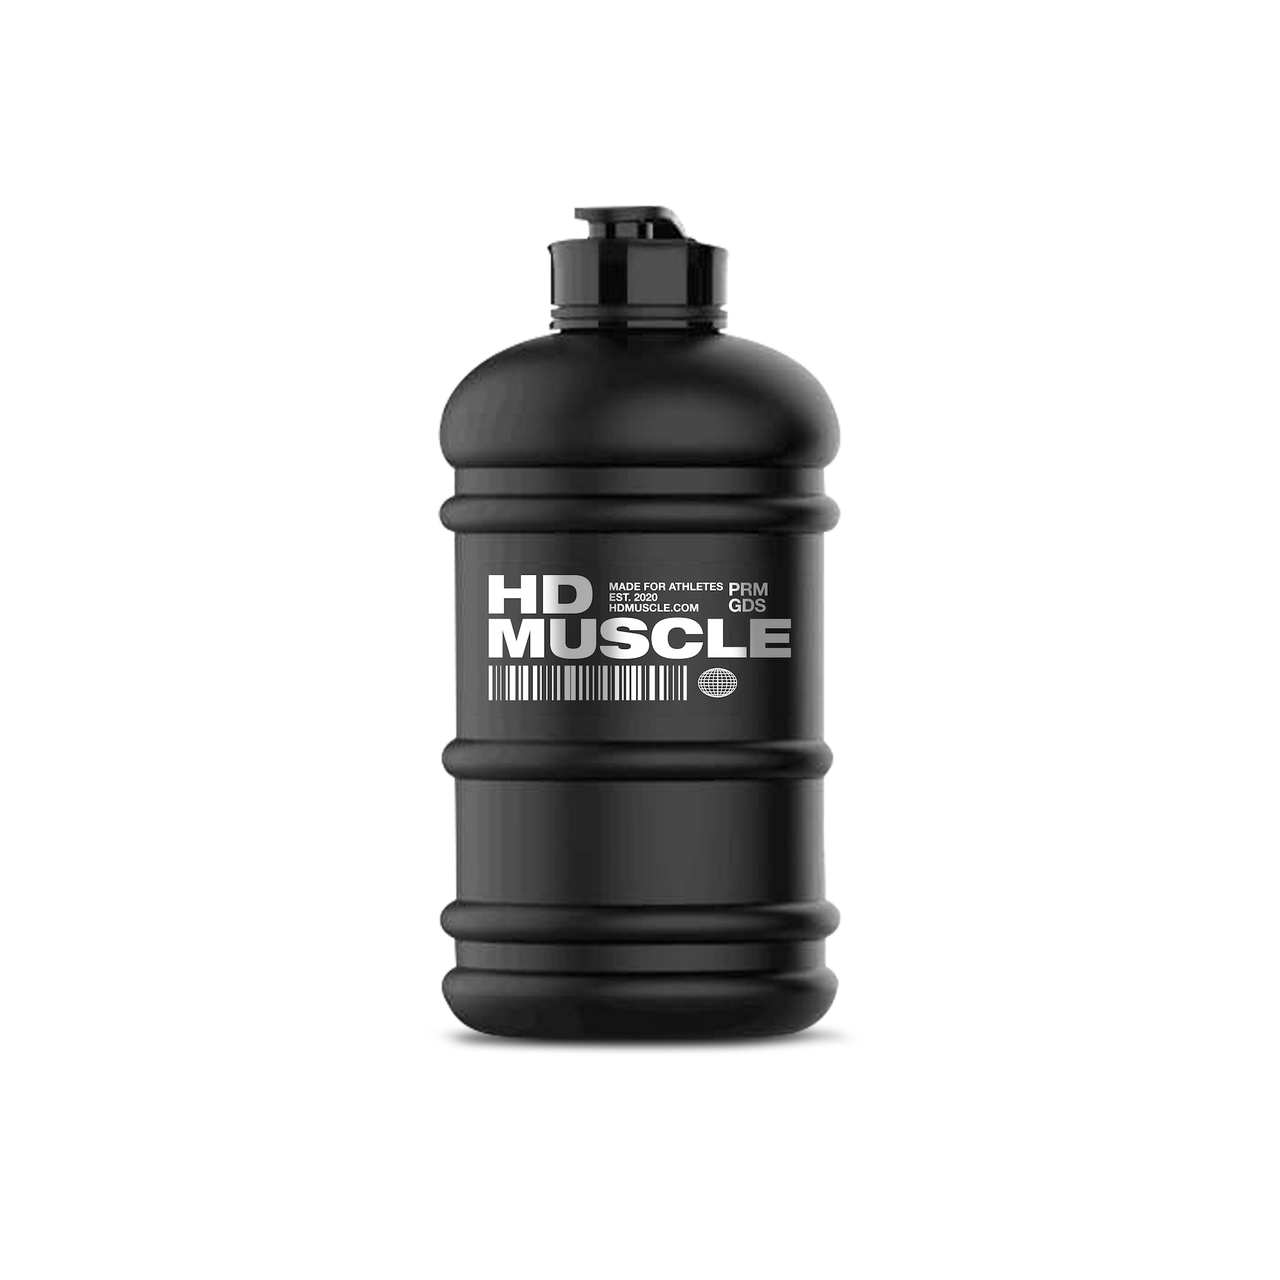 HD Muscle Big Bottle